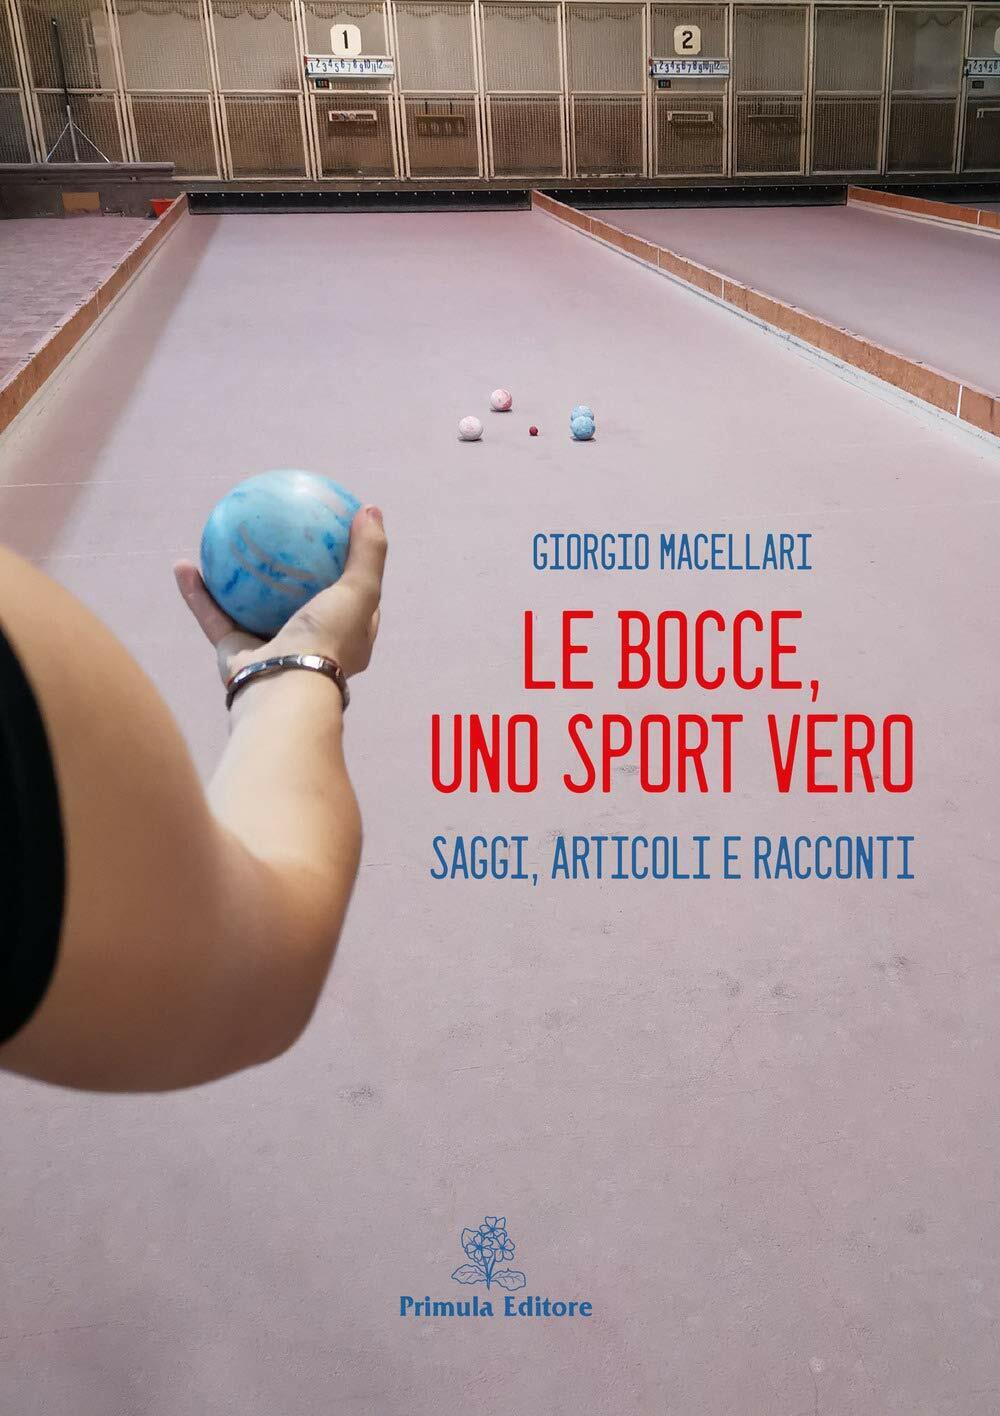 Le bocce, uno sport vero - Giorgio Macellari - Primula,2019